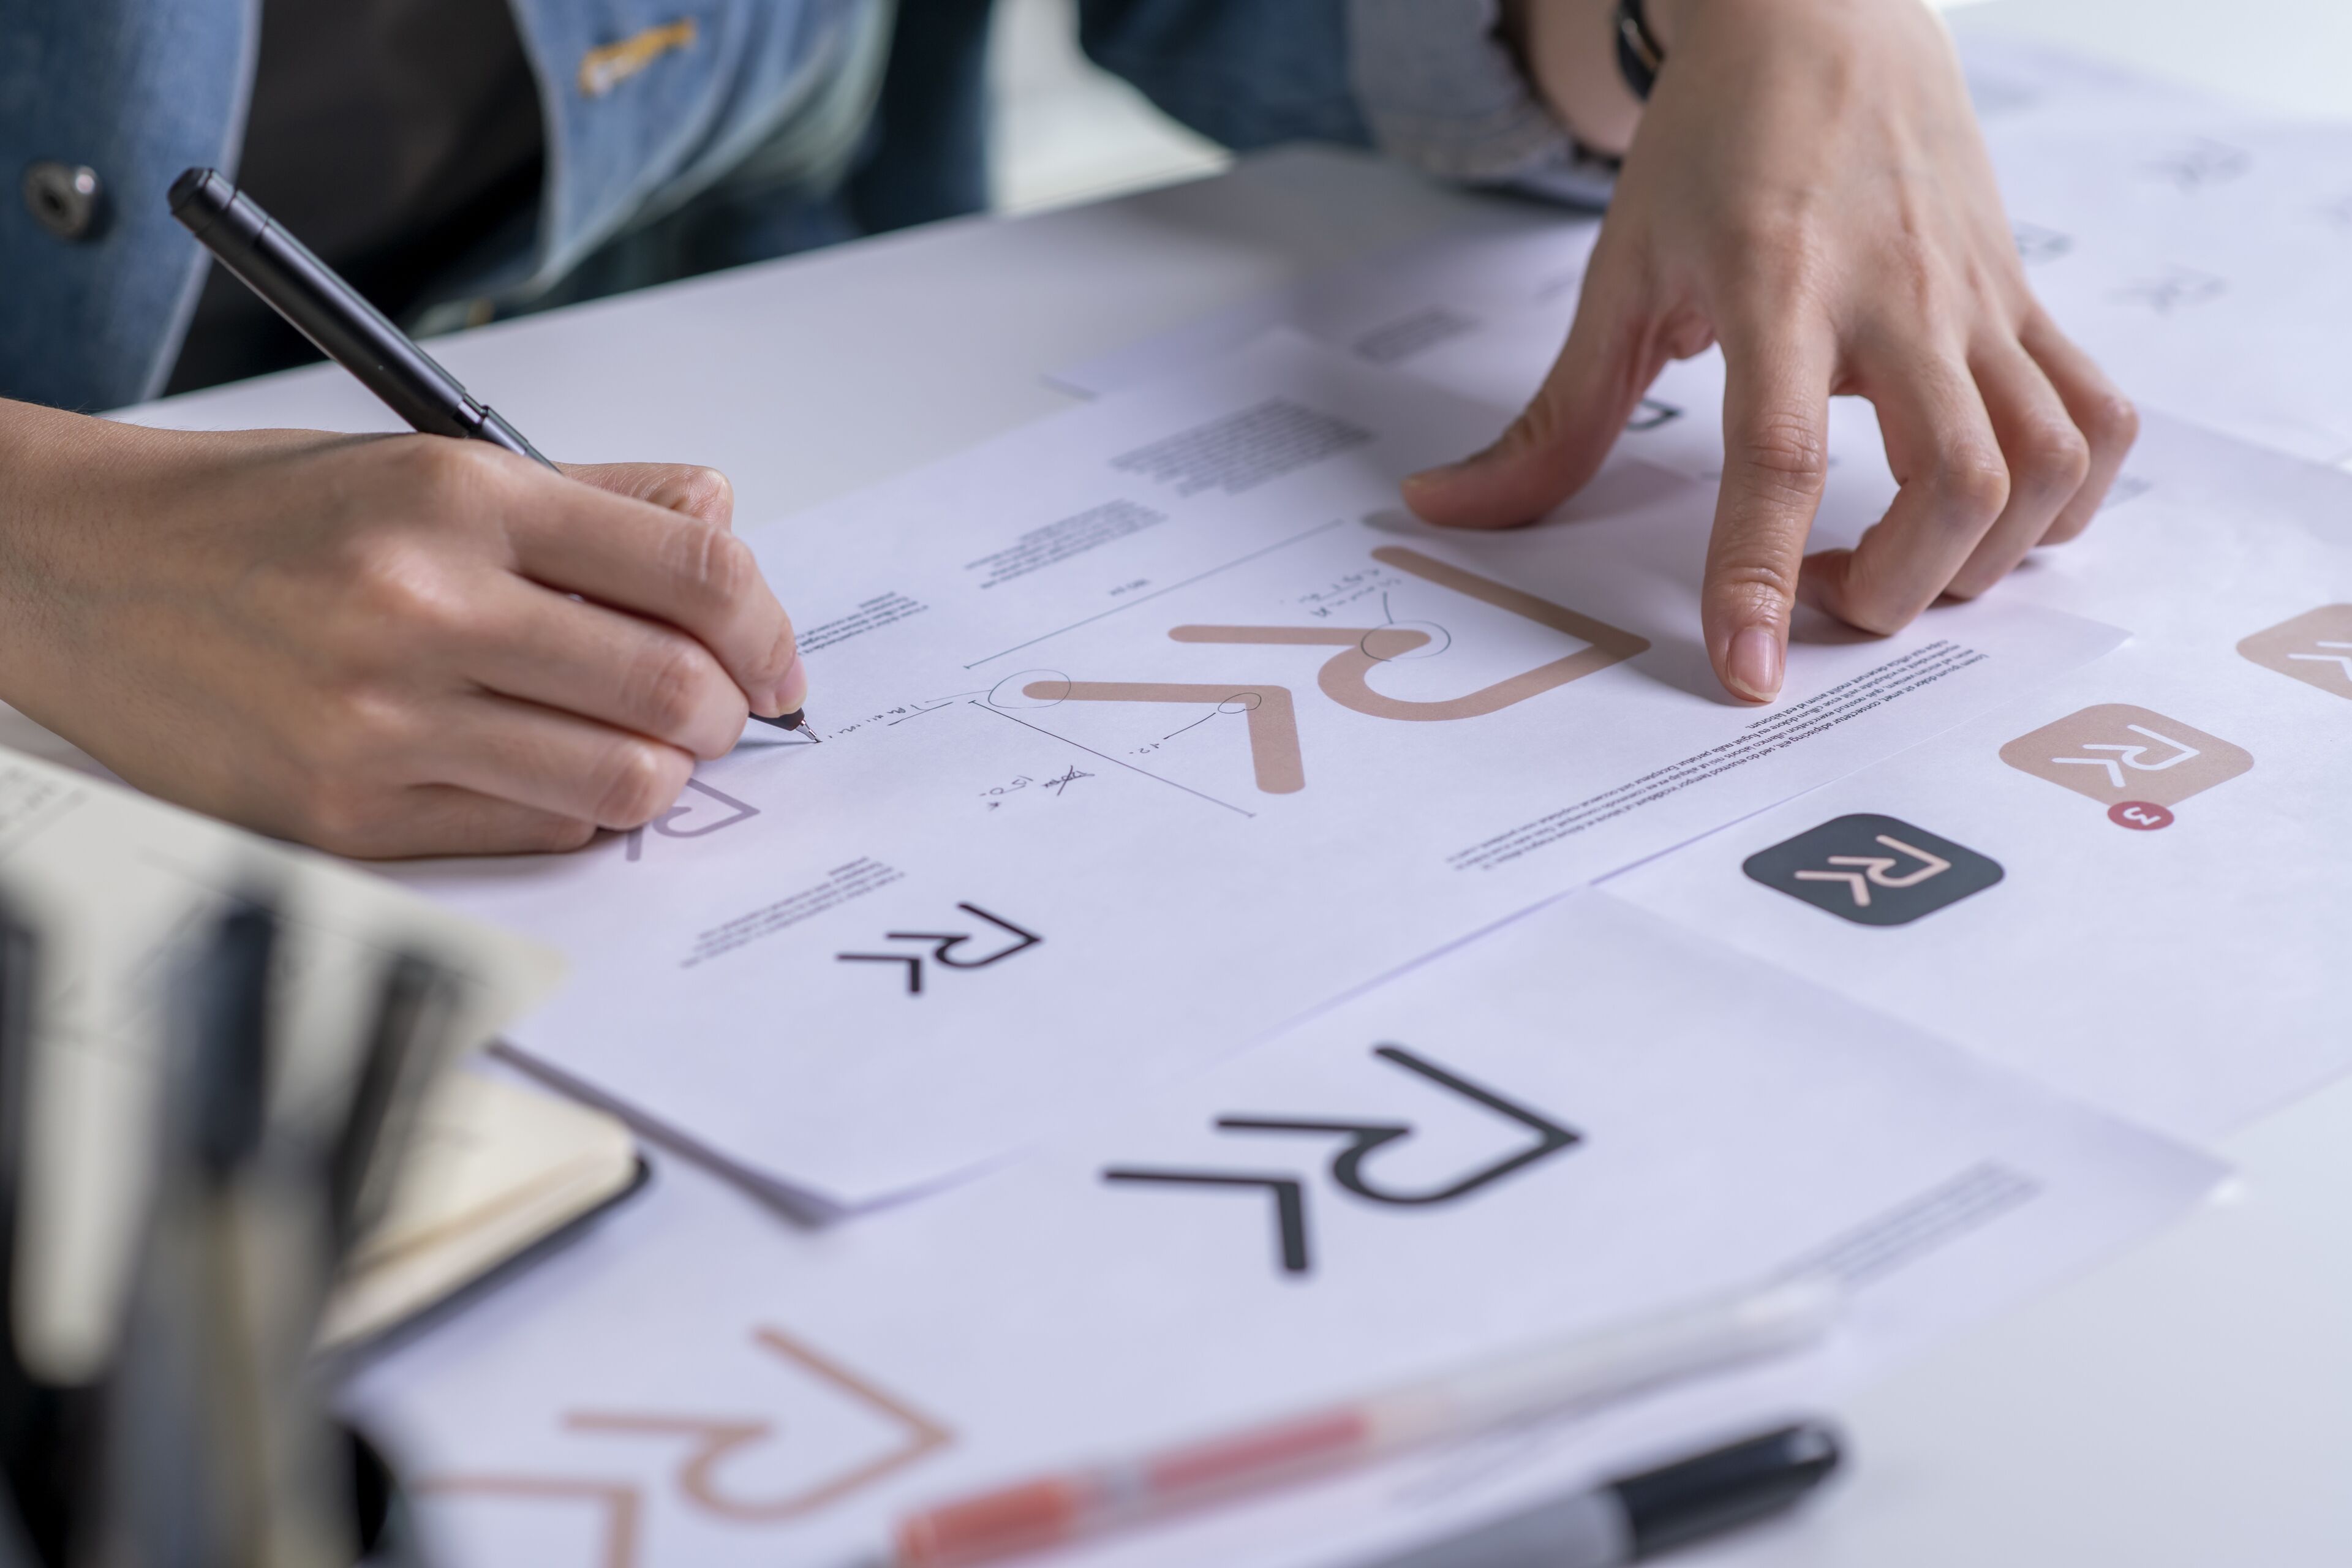 Una persona revisa y anota un conjunto de símbolos de diseño gráfico, posiblemente para fines de marca, con un bolígrafo en la mano.